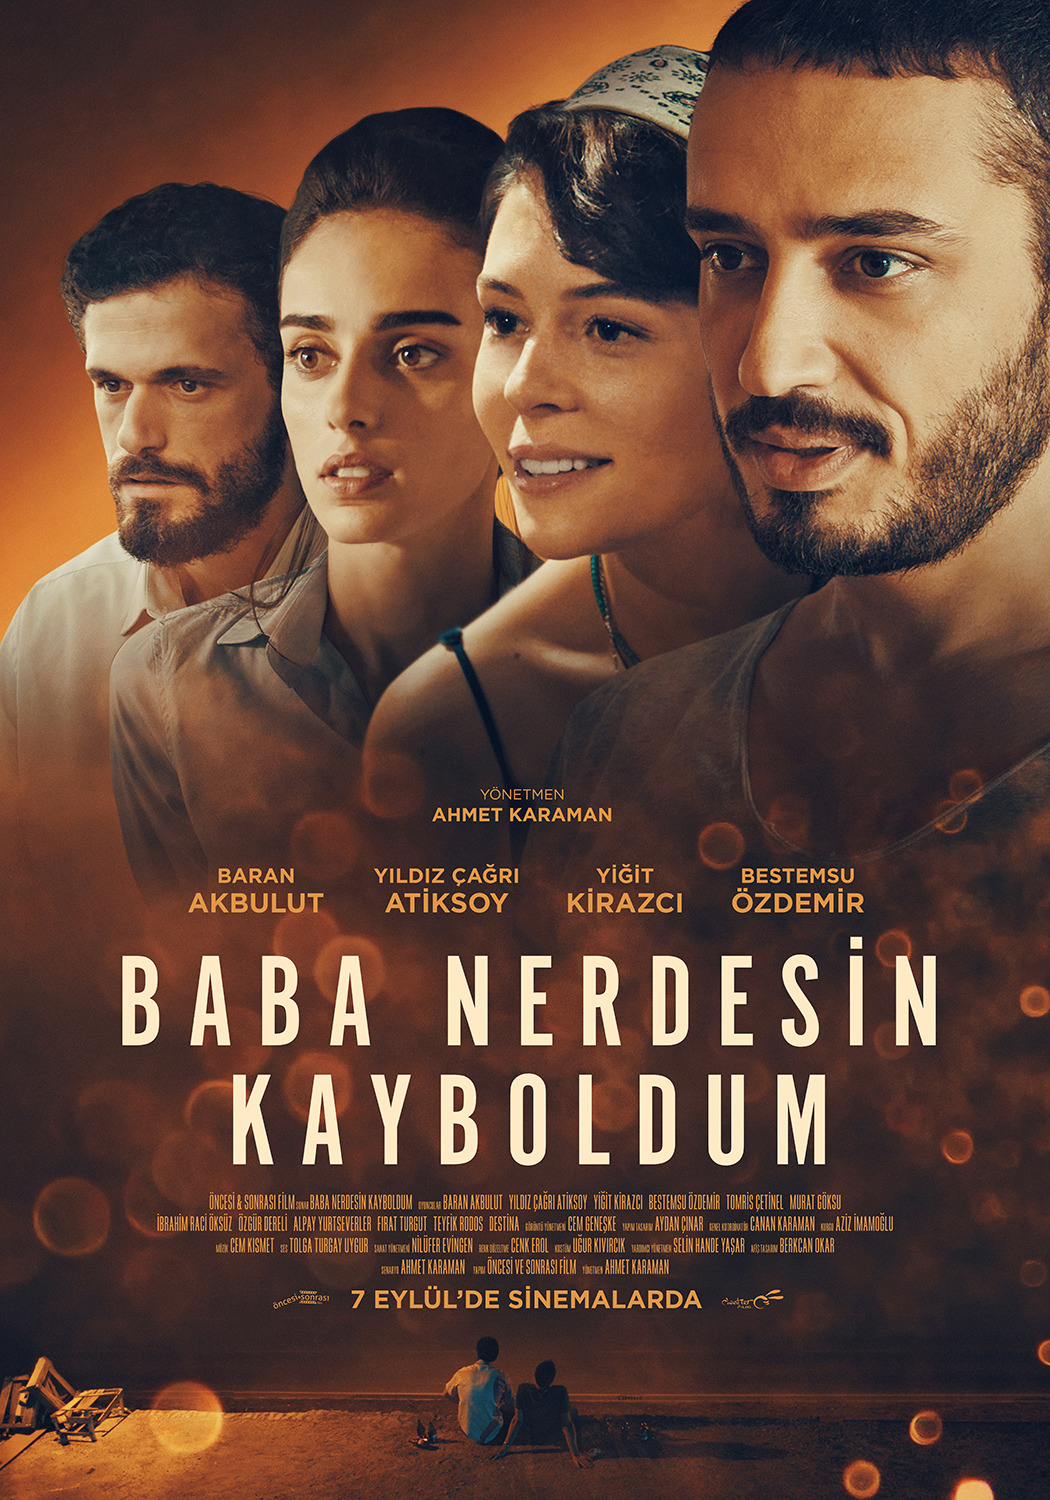 Extra Large Movie Poster Image for Baba Nerdesin Kayboldum (#4 of 5)